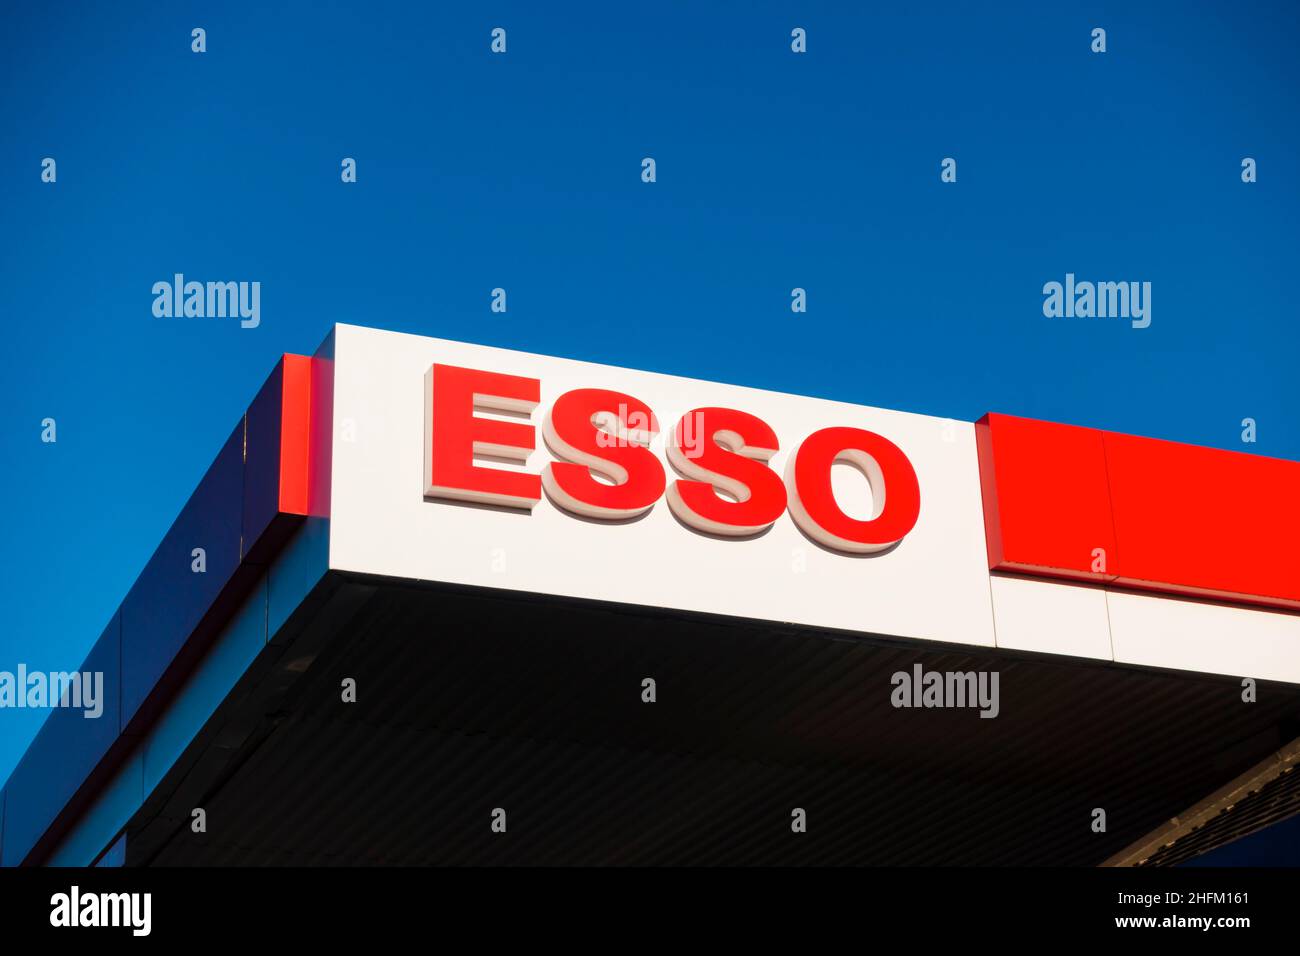 La station-service Esso parcourt la signalisation sur le toit contre le ciel bleu clair. Banque D'Images